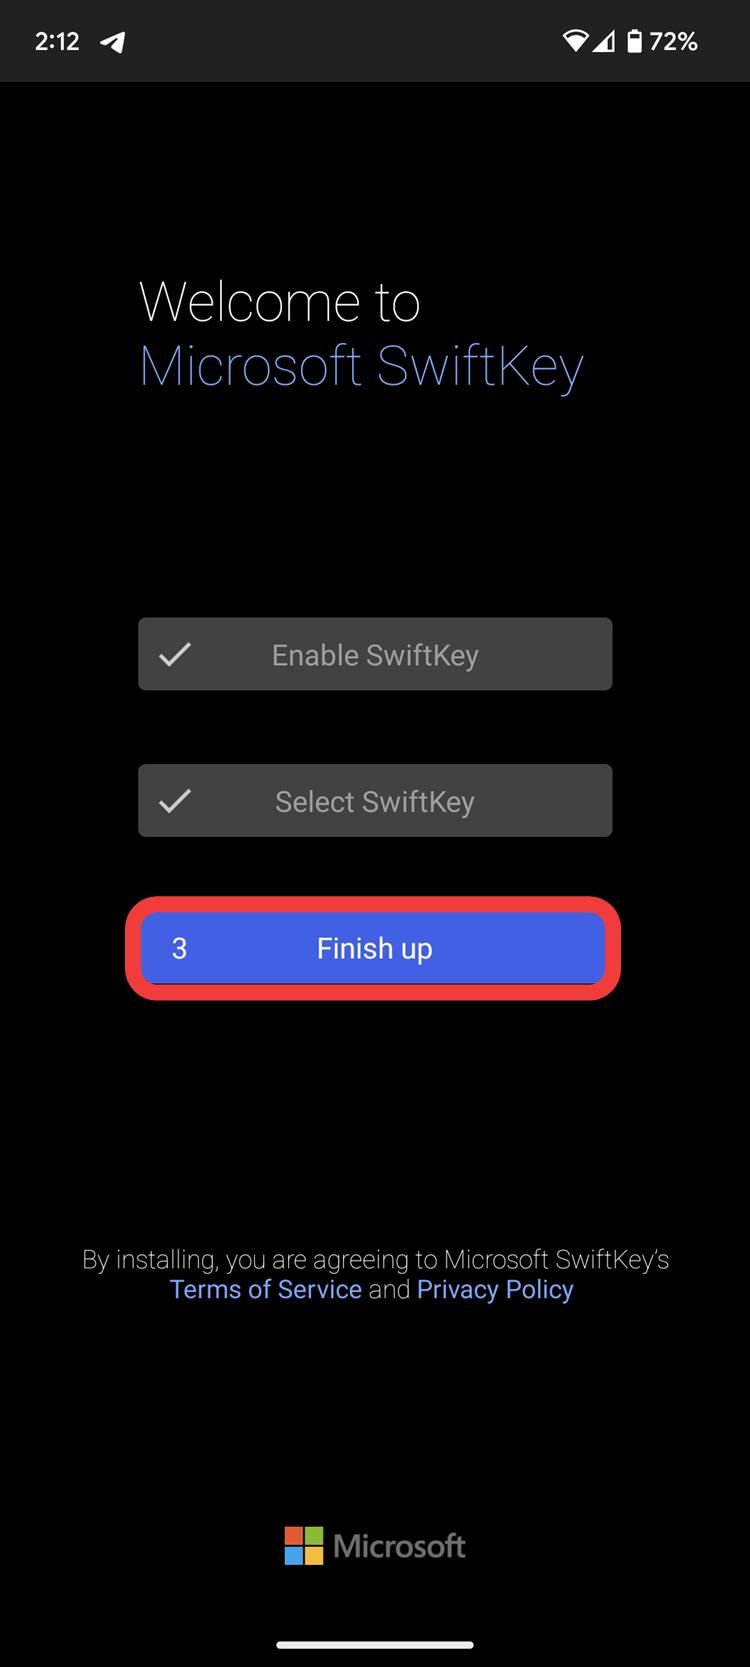 Captura de tela mostrando a conclusão da configuração do botão switfkey em um dispositivo Android